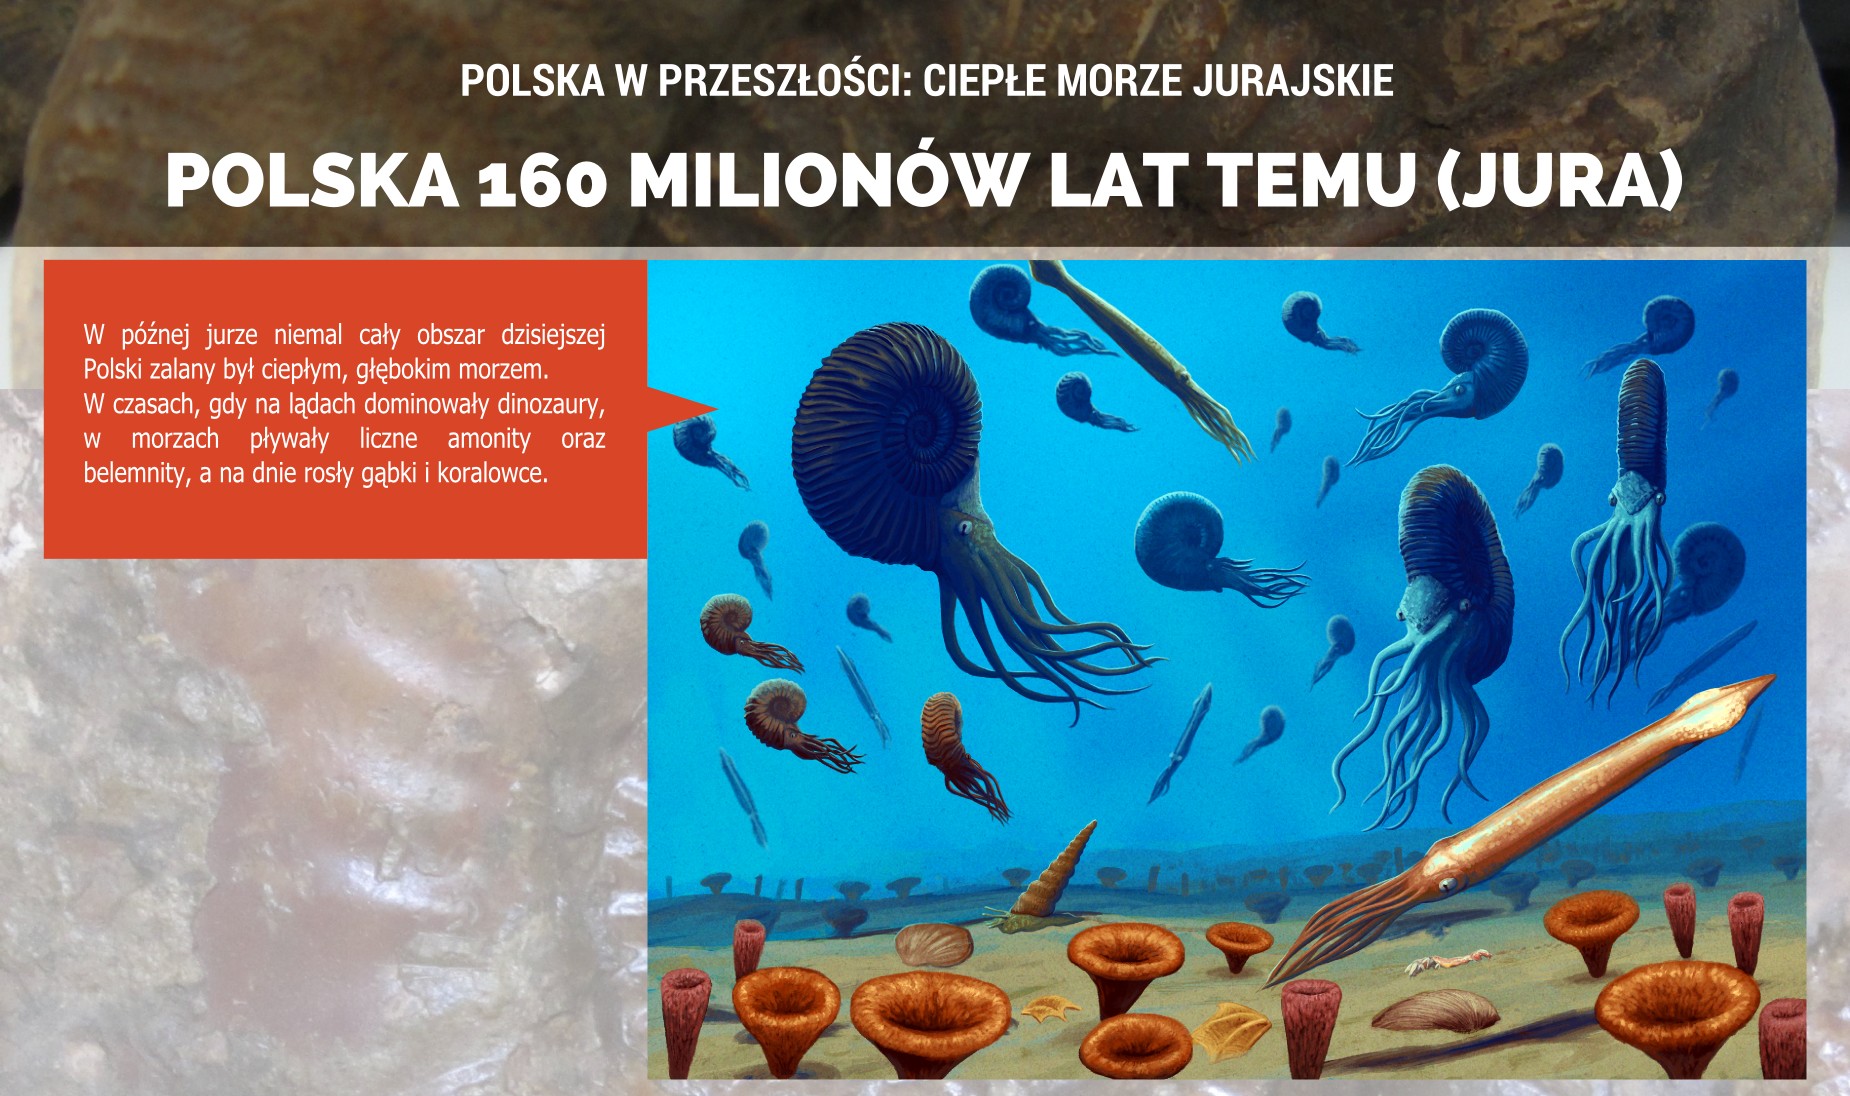 Jurajskie morze na terenie Polski - plakat.